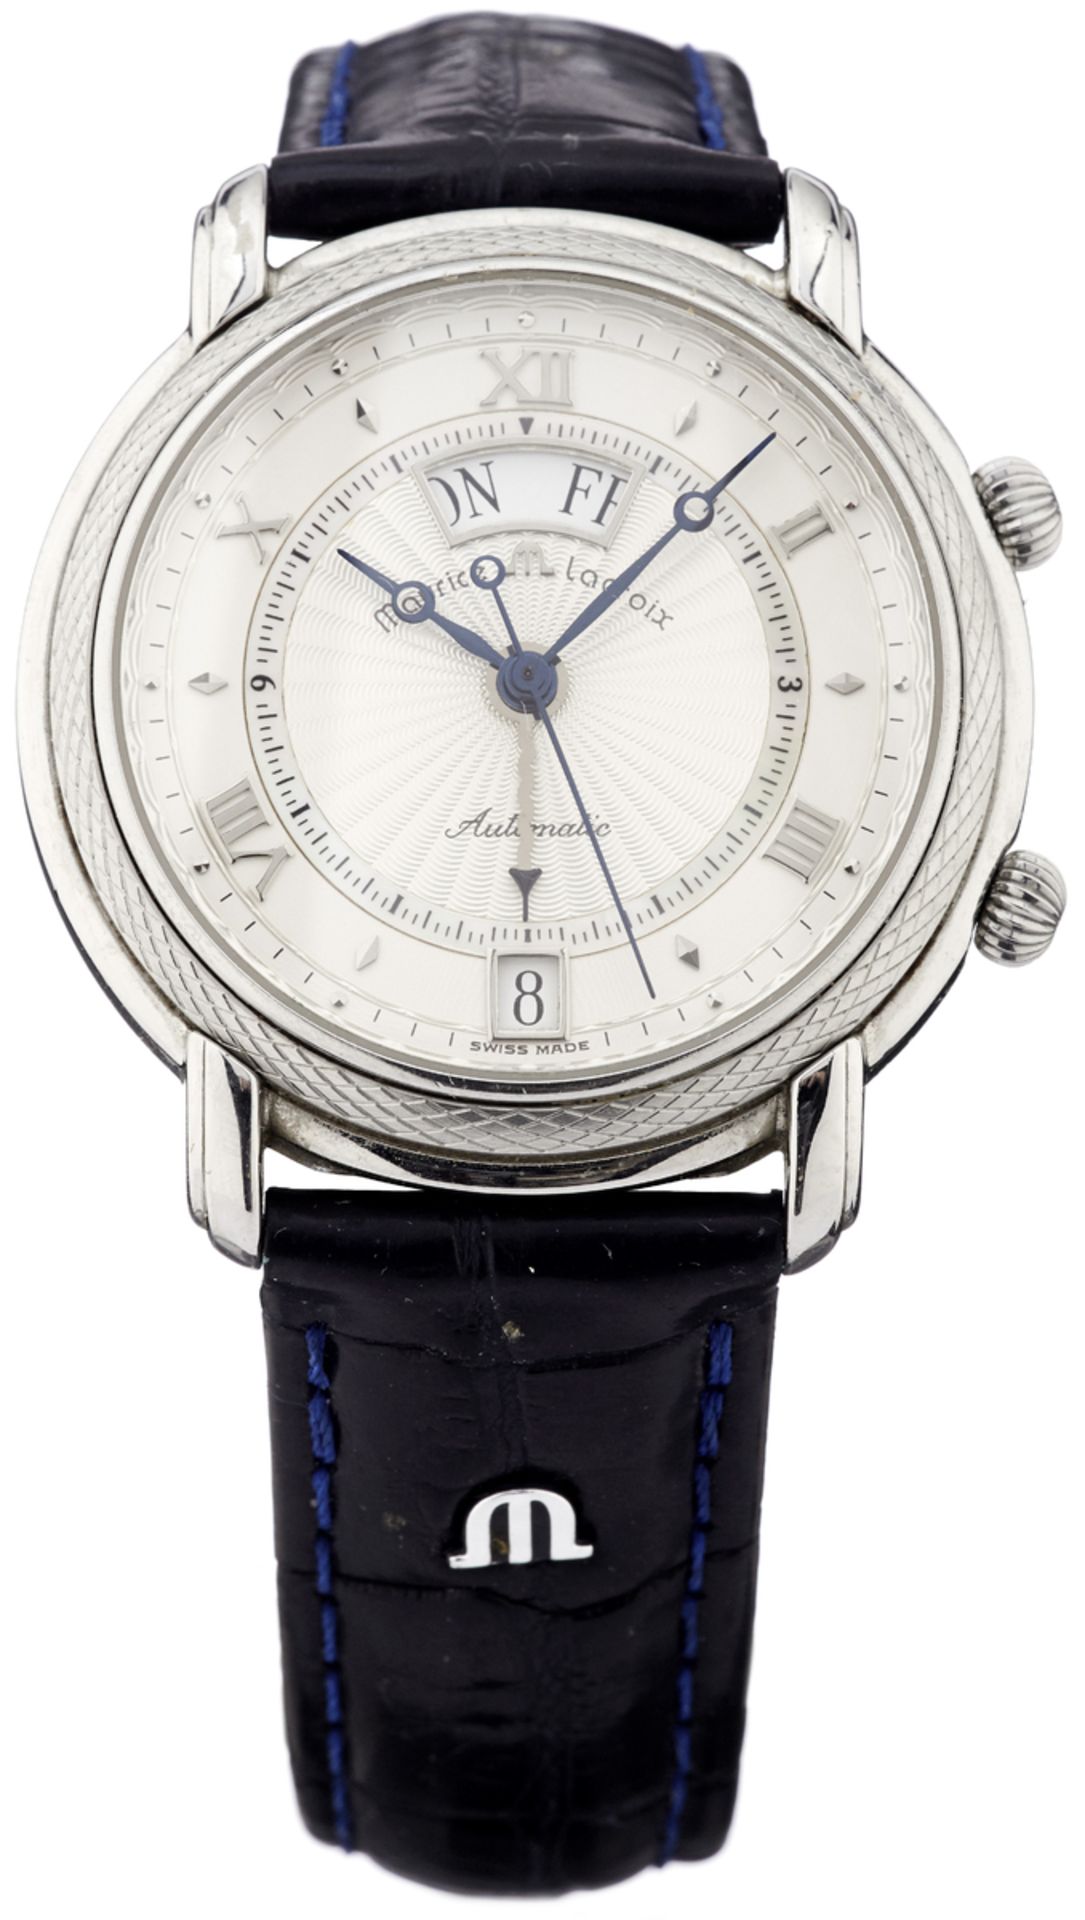 Armbanduhr "Maurice Lacroix"Stahlgehäuse mit Sichtboden. Silberfarbenes, guillochiertes